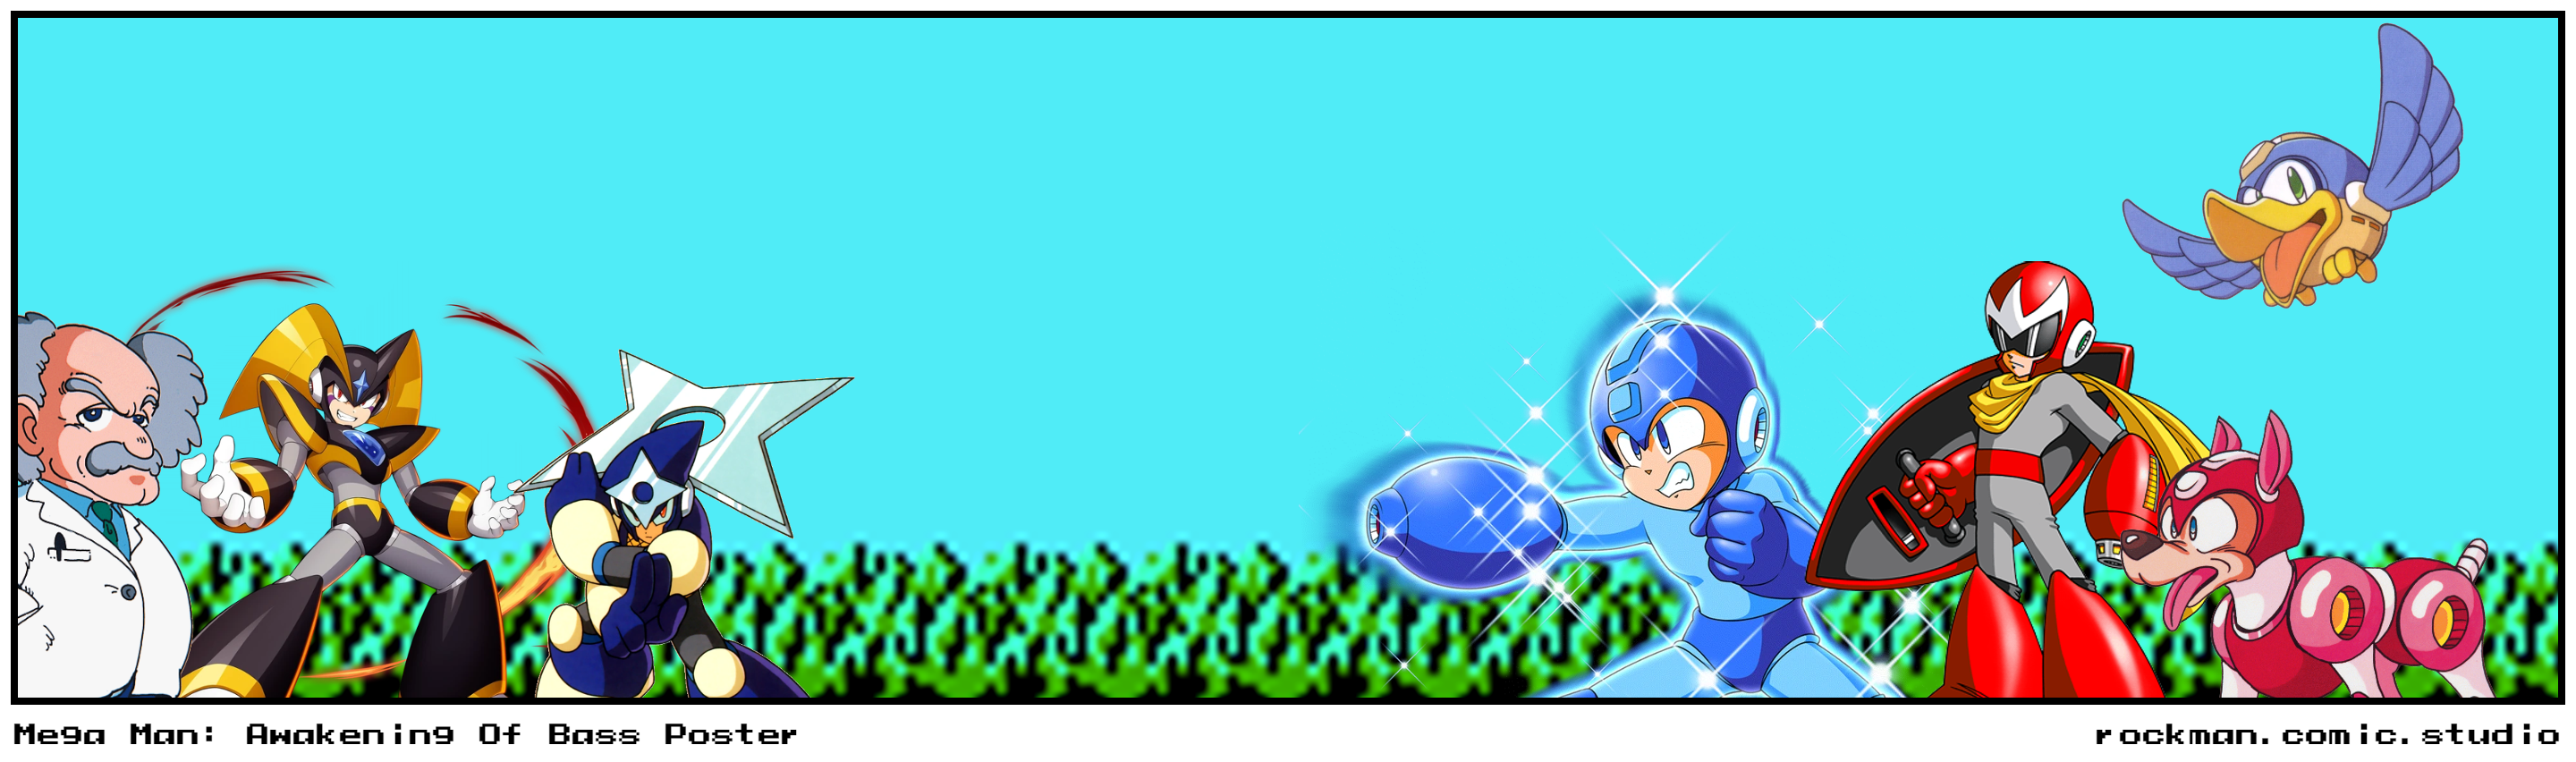 Mega Man: Awakening Of Bass Poster